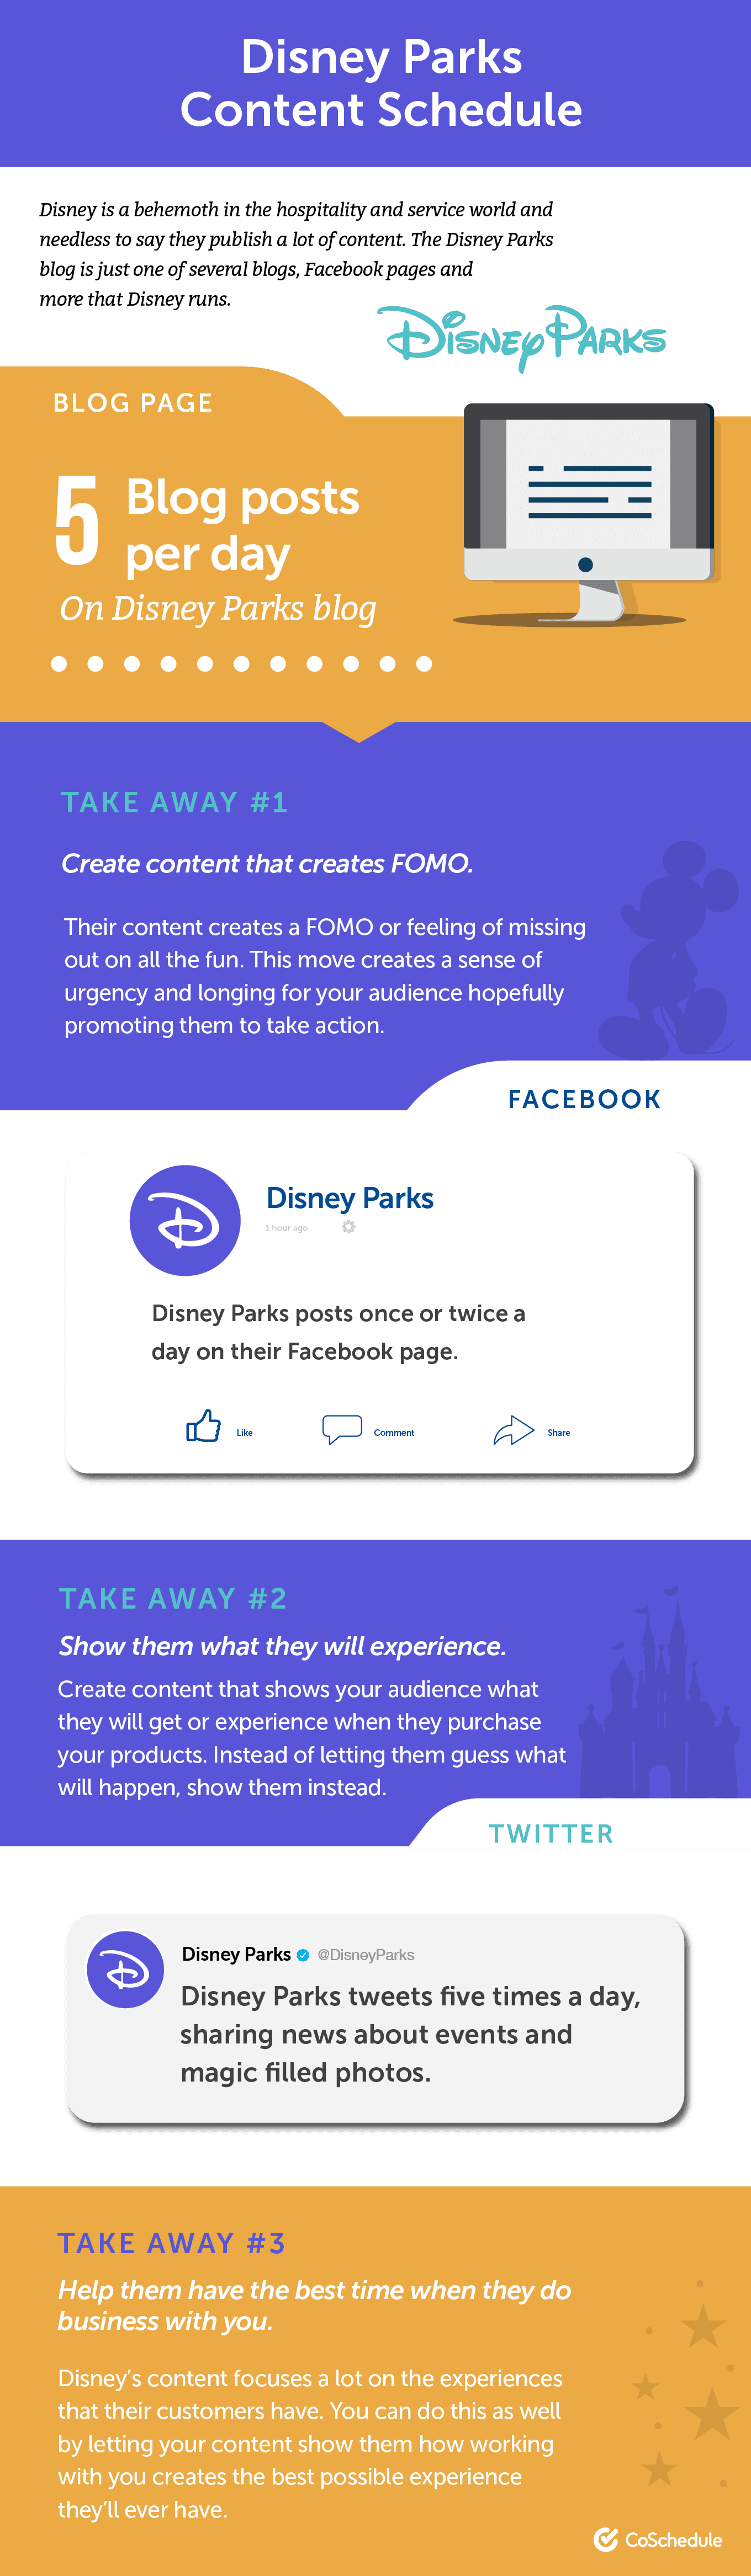 Disney Parks content schedule